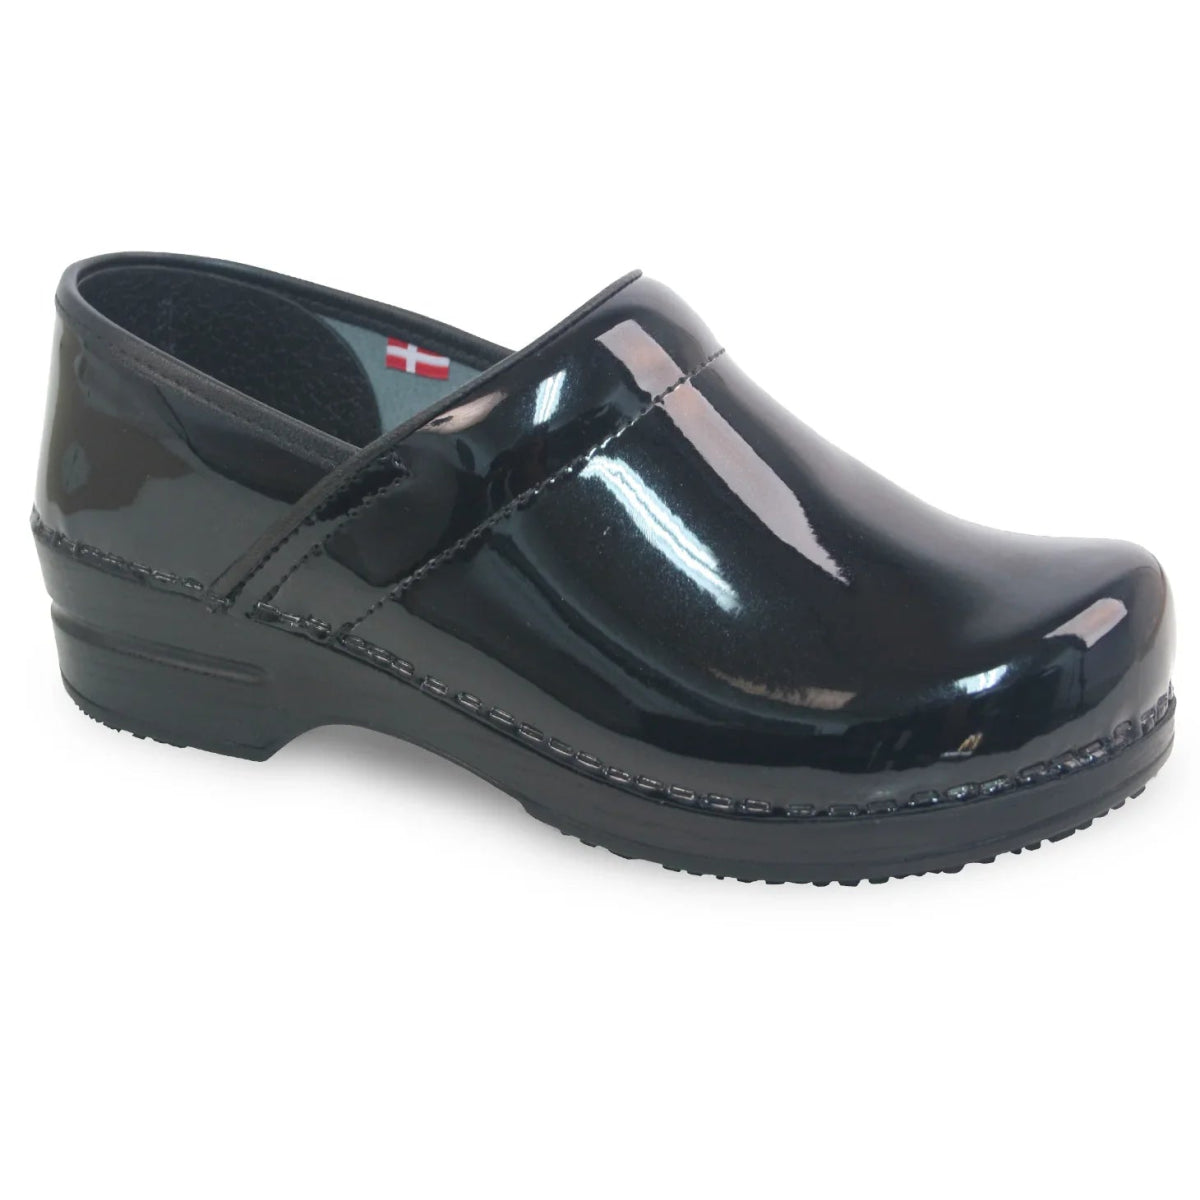 SANITA SABEL WOMEN CLOG IN BLACK - TLW Shoes